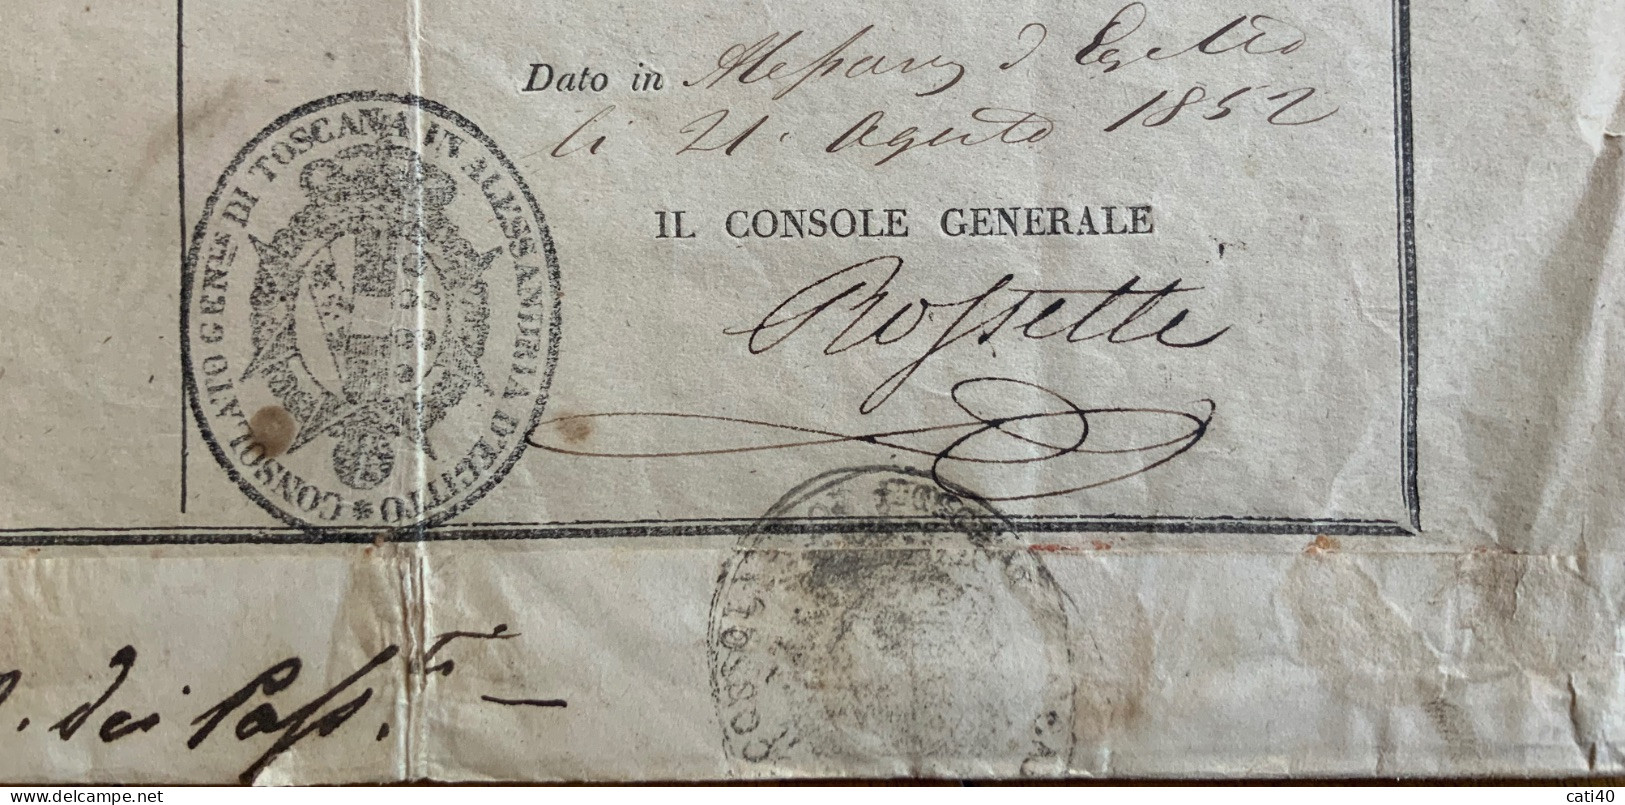 ROSSETTI ANNIBALE, CONSOLE GENERALE DI TOSCANA IN ALESSANDRIA D'EGITTO - 21/8/1852 -   FIRMA AUTOGRAFA CONTROFIRMATA  -- - Historical Documents